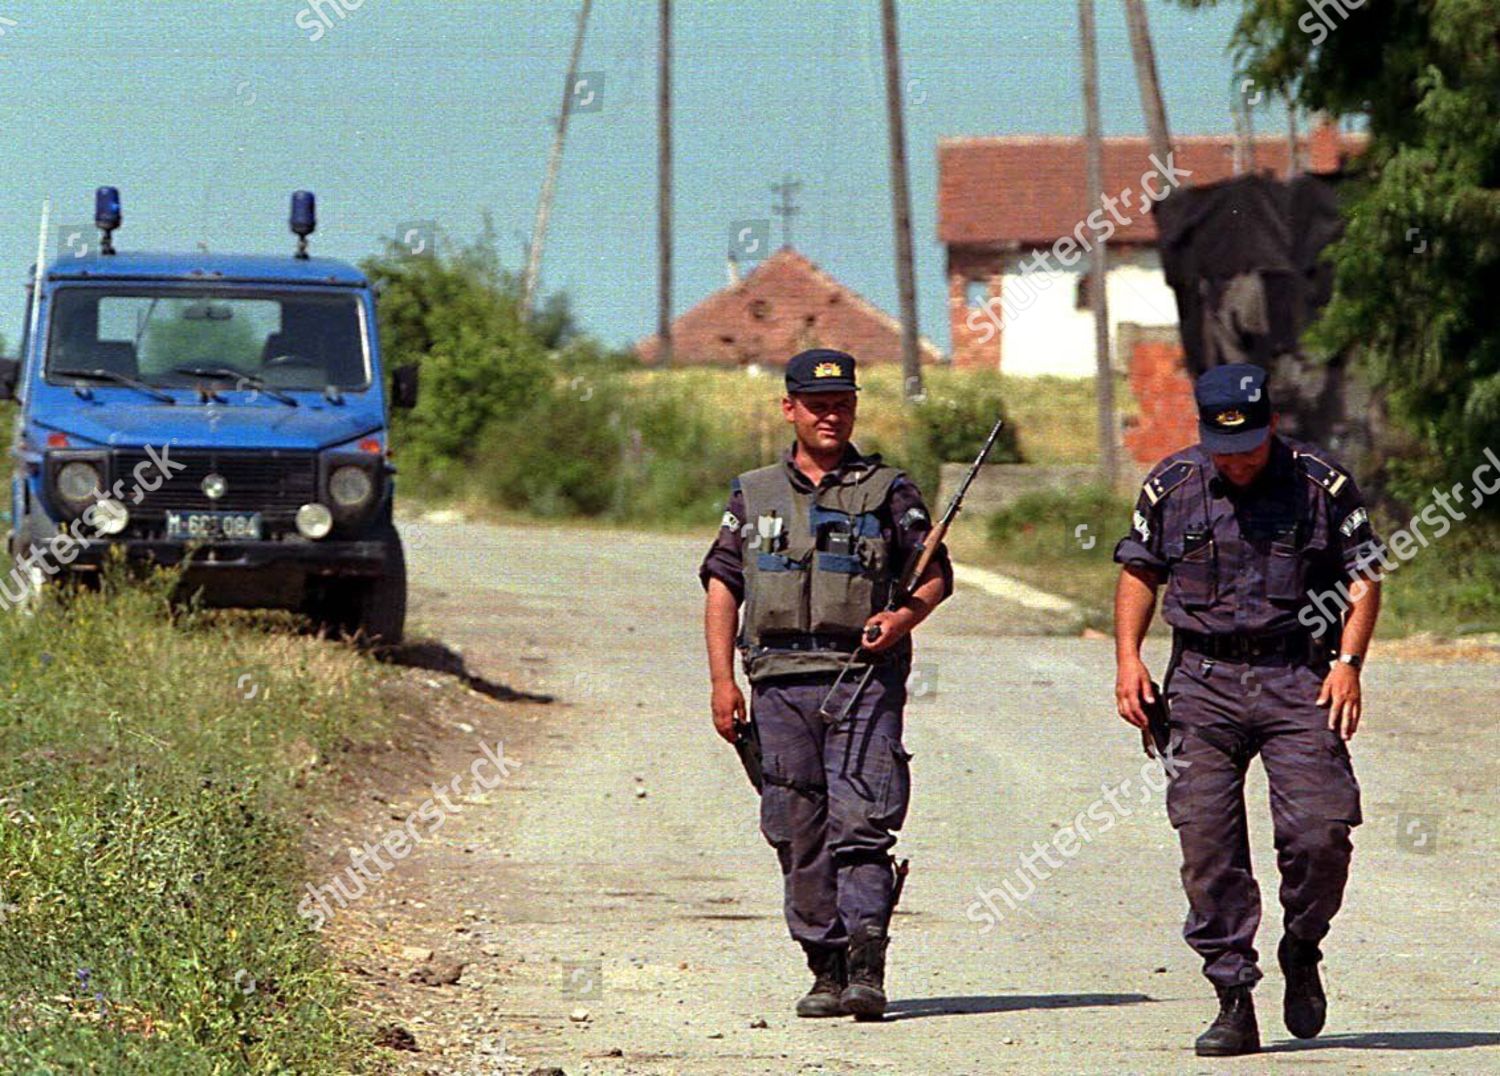 kosovo-police-patrol-jul-1998-shutterstock-editorial-8352760a.jpg